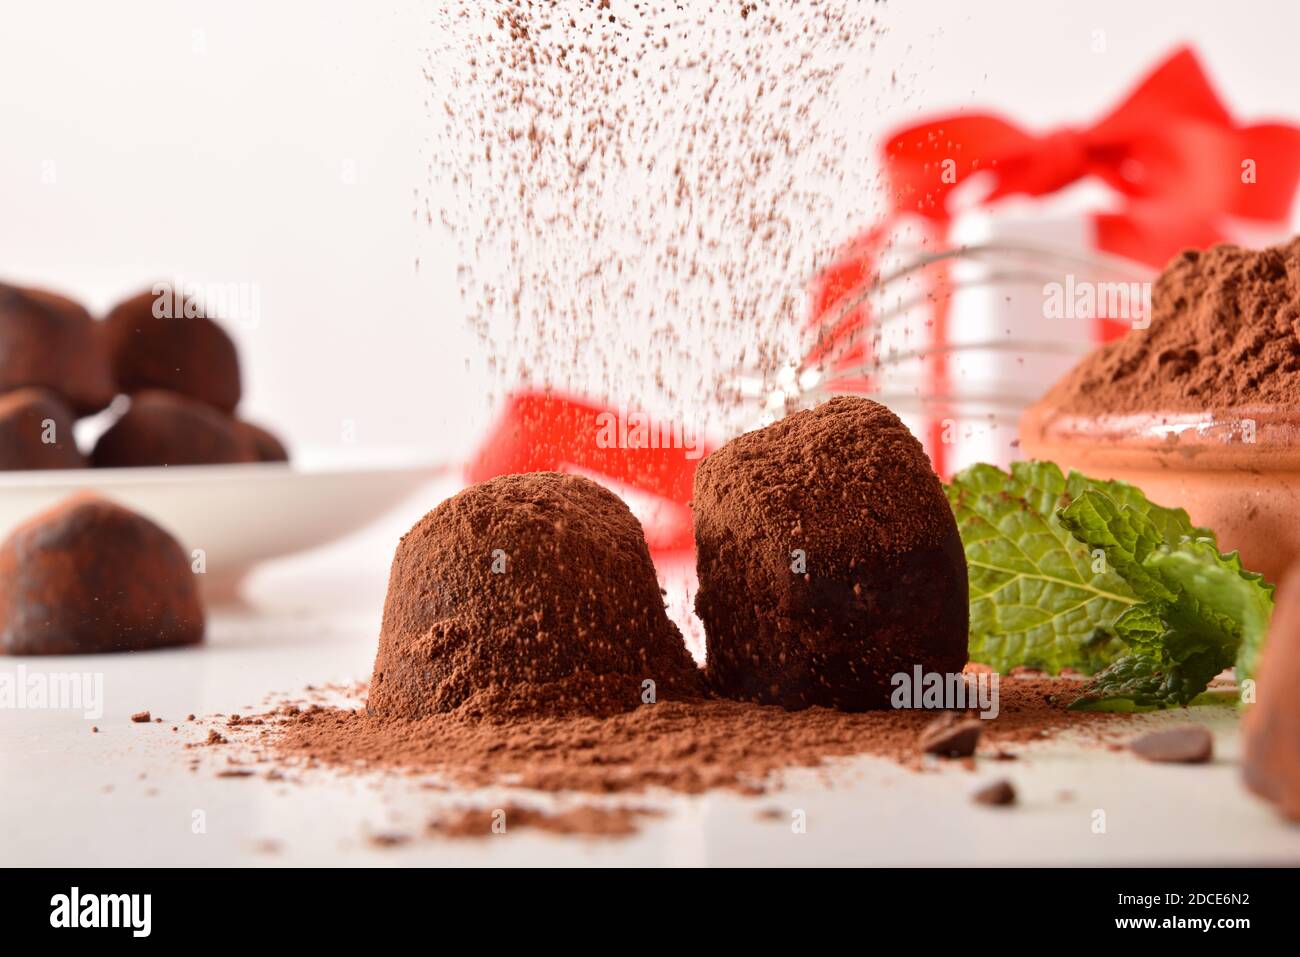 Kakaopulver fallen auf Schokolade Trüffel auf weiße Küchenbank für eine Veranstaltung und Geschenk im Hintergrund vorbereitet. Vorderansicht. Horizontale Zusammensetzung Stockfoto